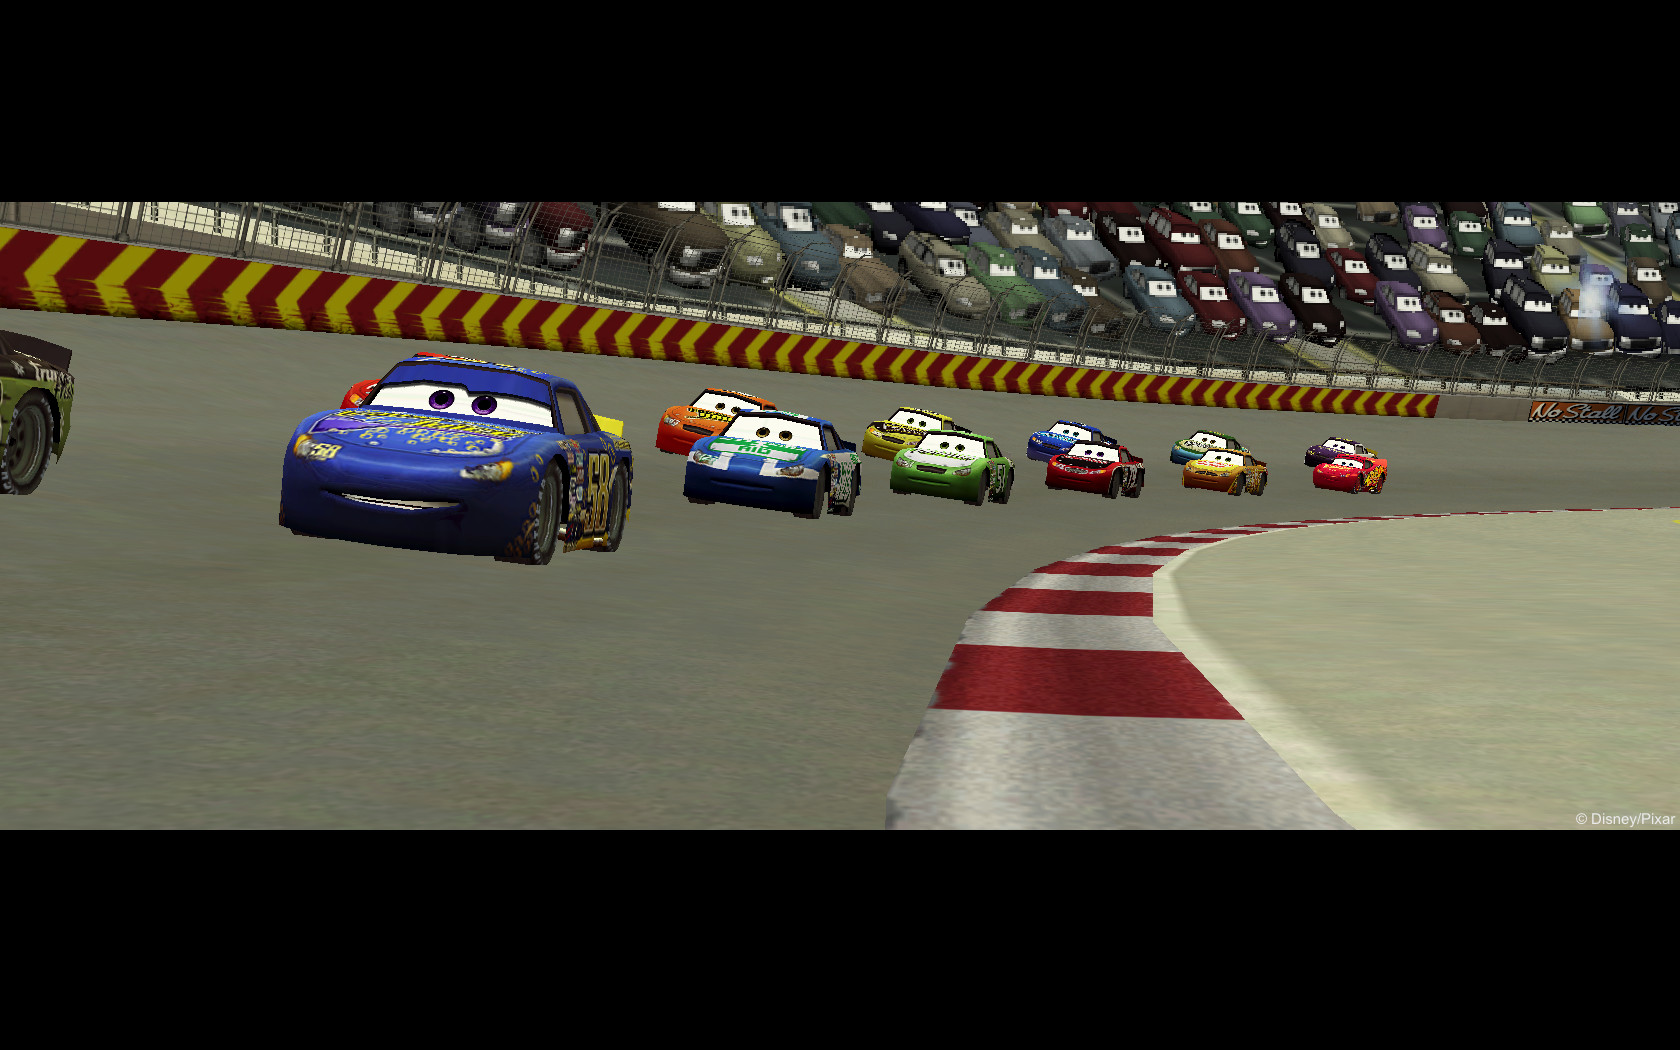 Jogo Disney-pixar Cars - Race-o-rama